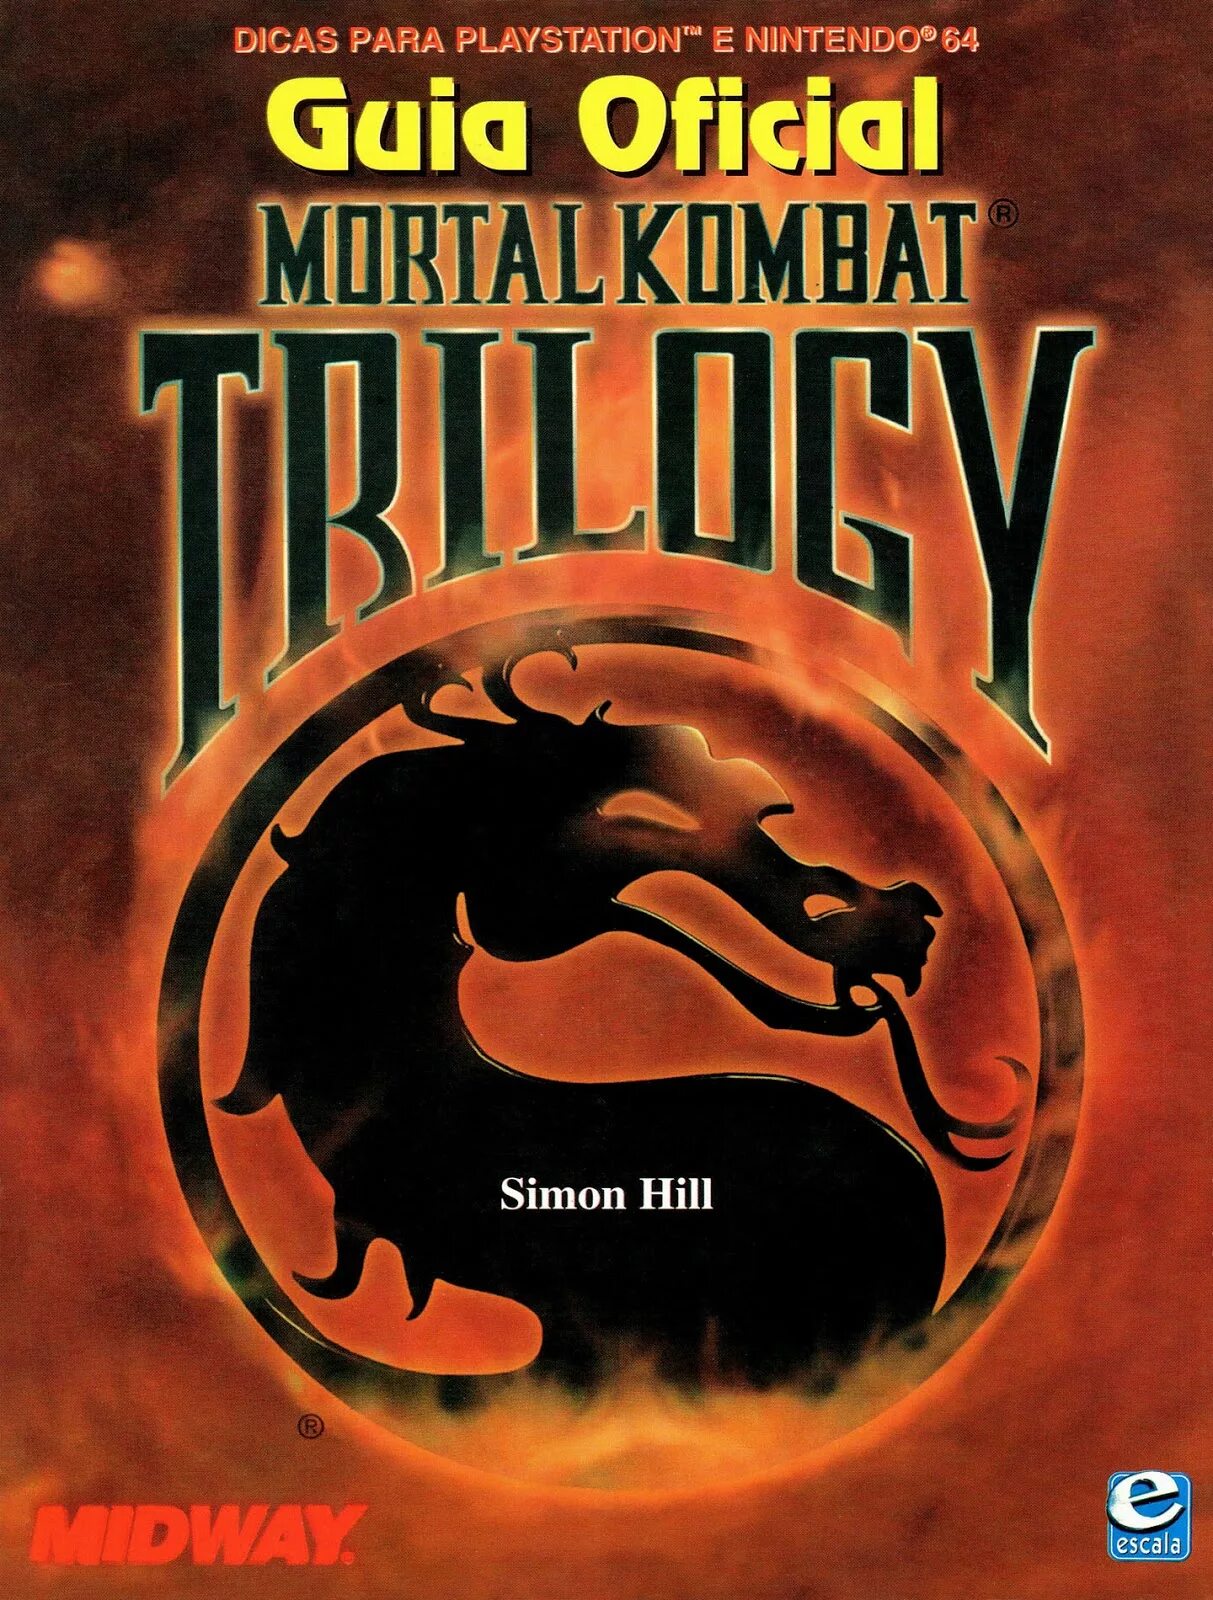 Мортал комбат трилогия ps1. Mortal Kombat Trilogy. Mortal Kombat 1 обложка. Mortal Kombat Trilogy ps1. Ps2 Mortal Kombat Trilogy.